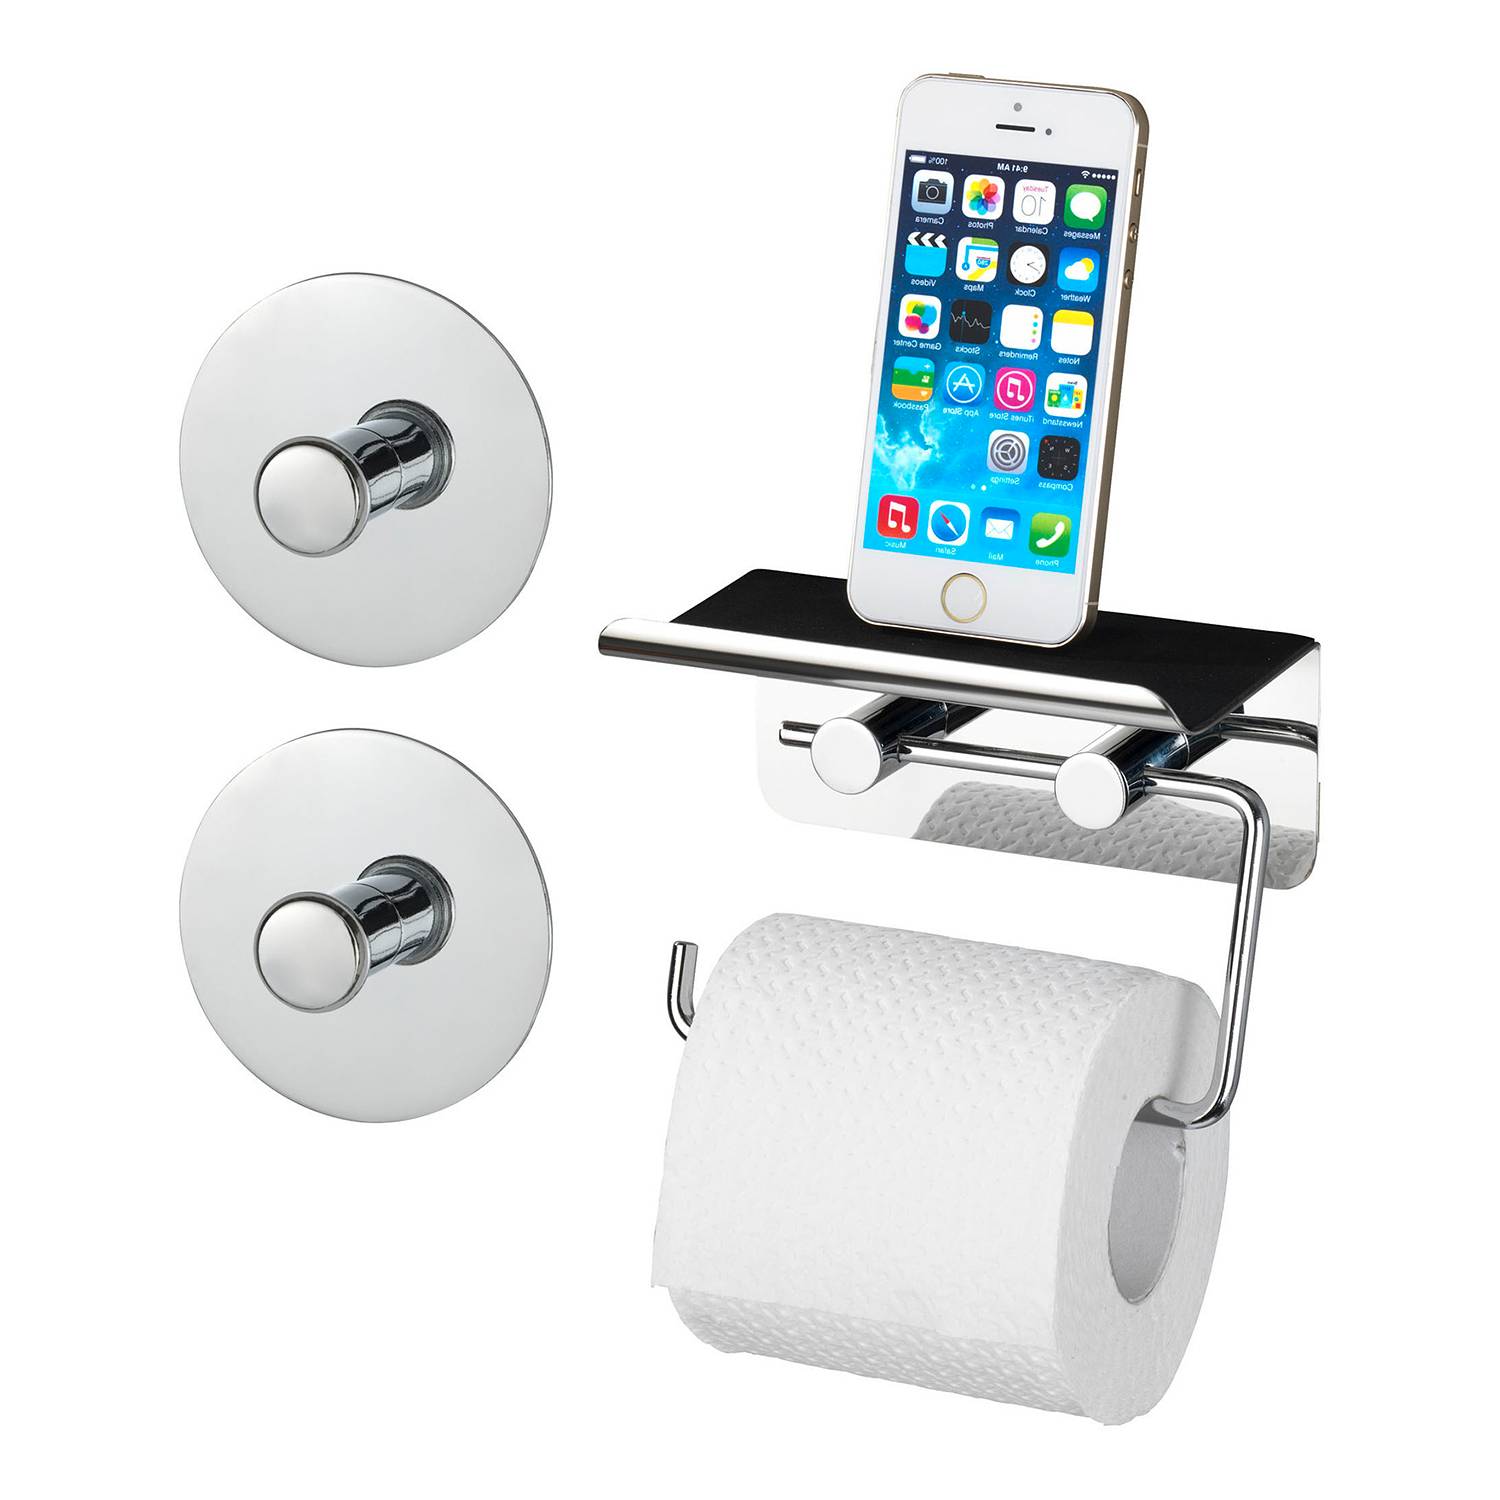 Toilettenpapierhalter Smartphone Ablage kaufen | home24 | Toilettenpapierhalter